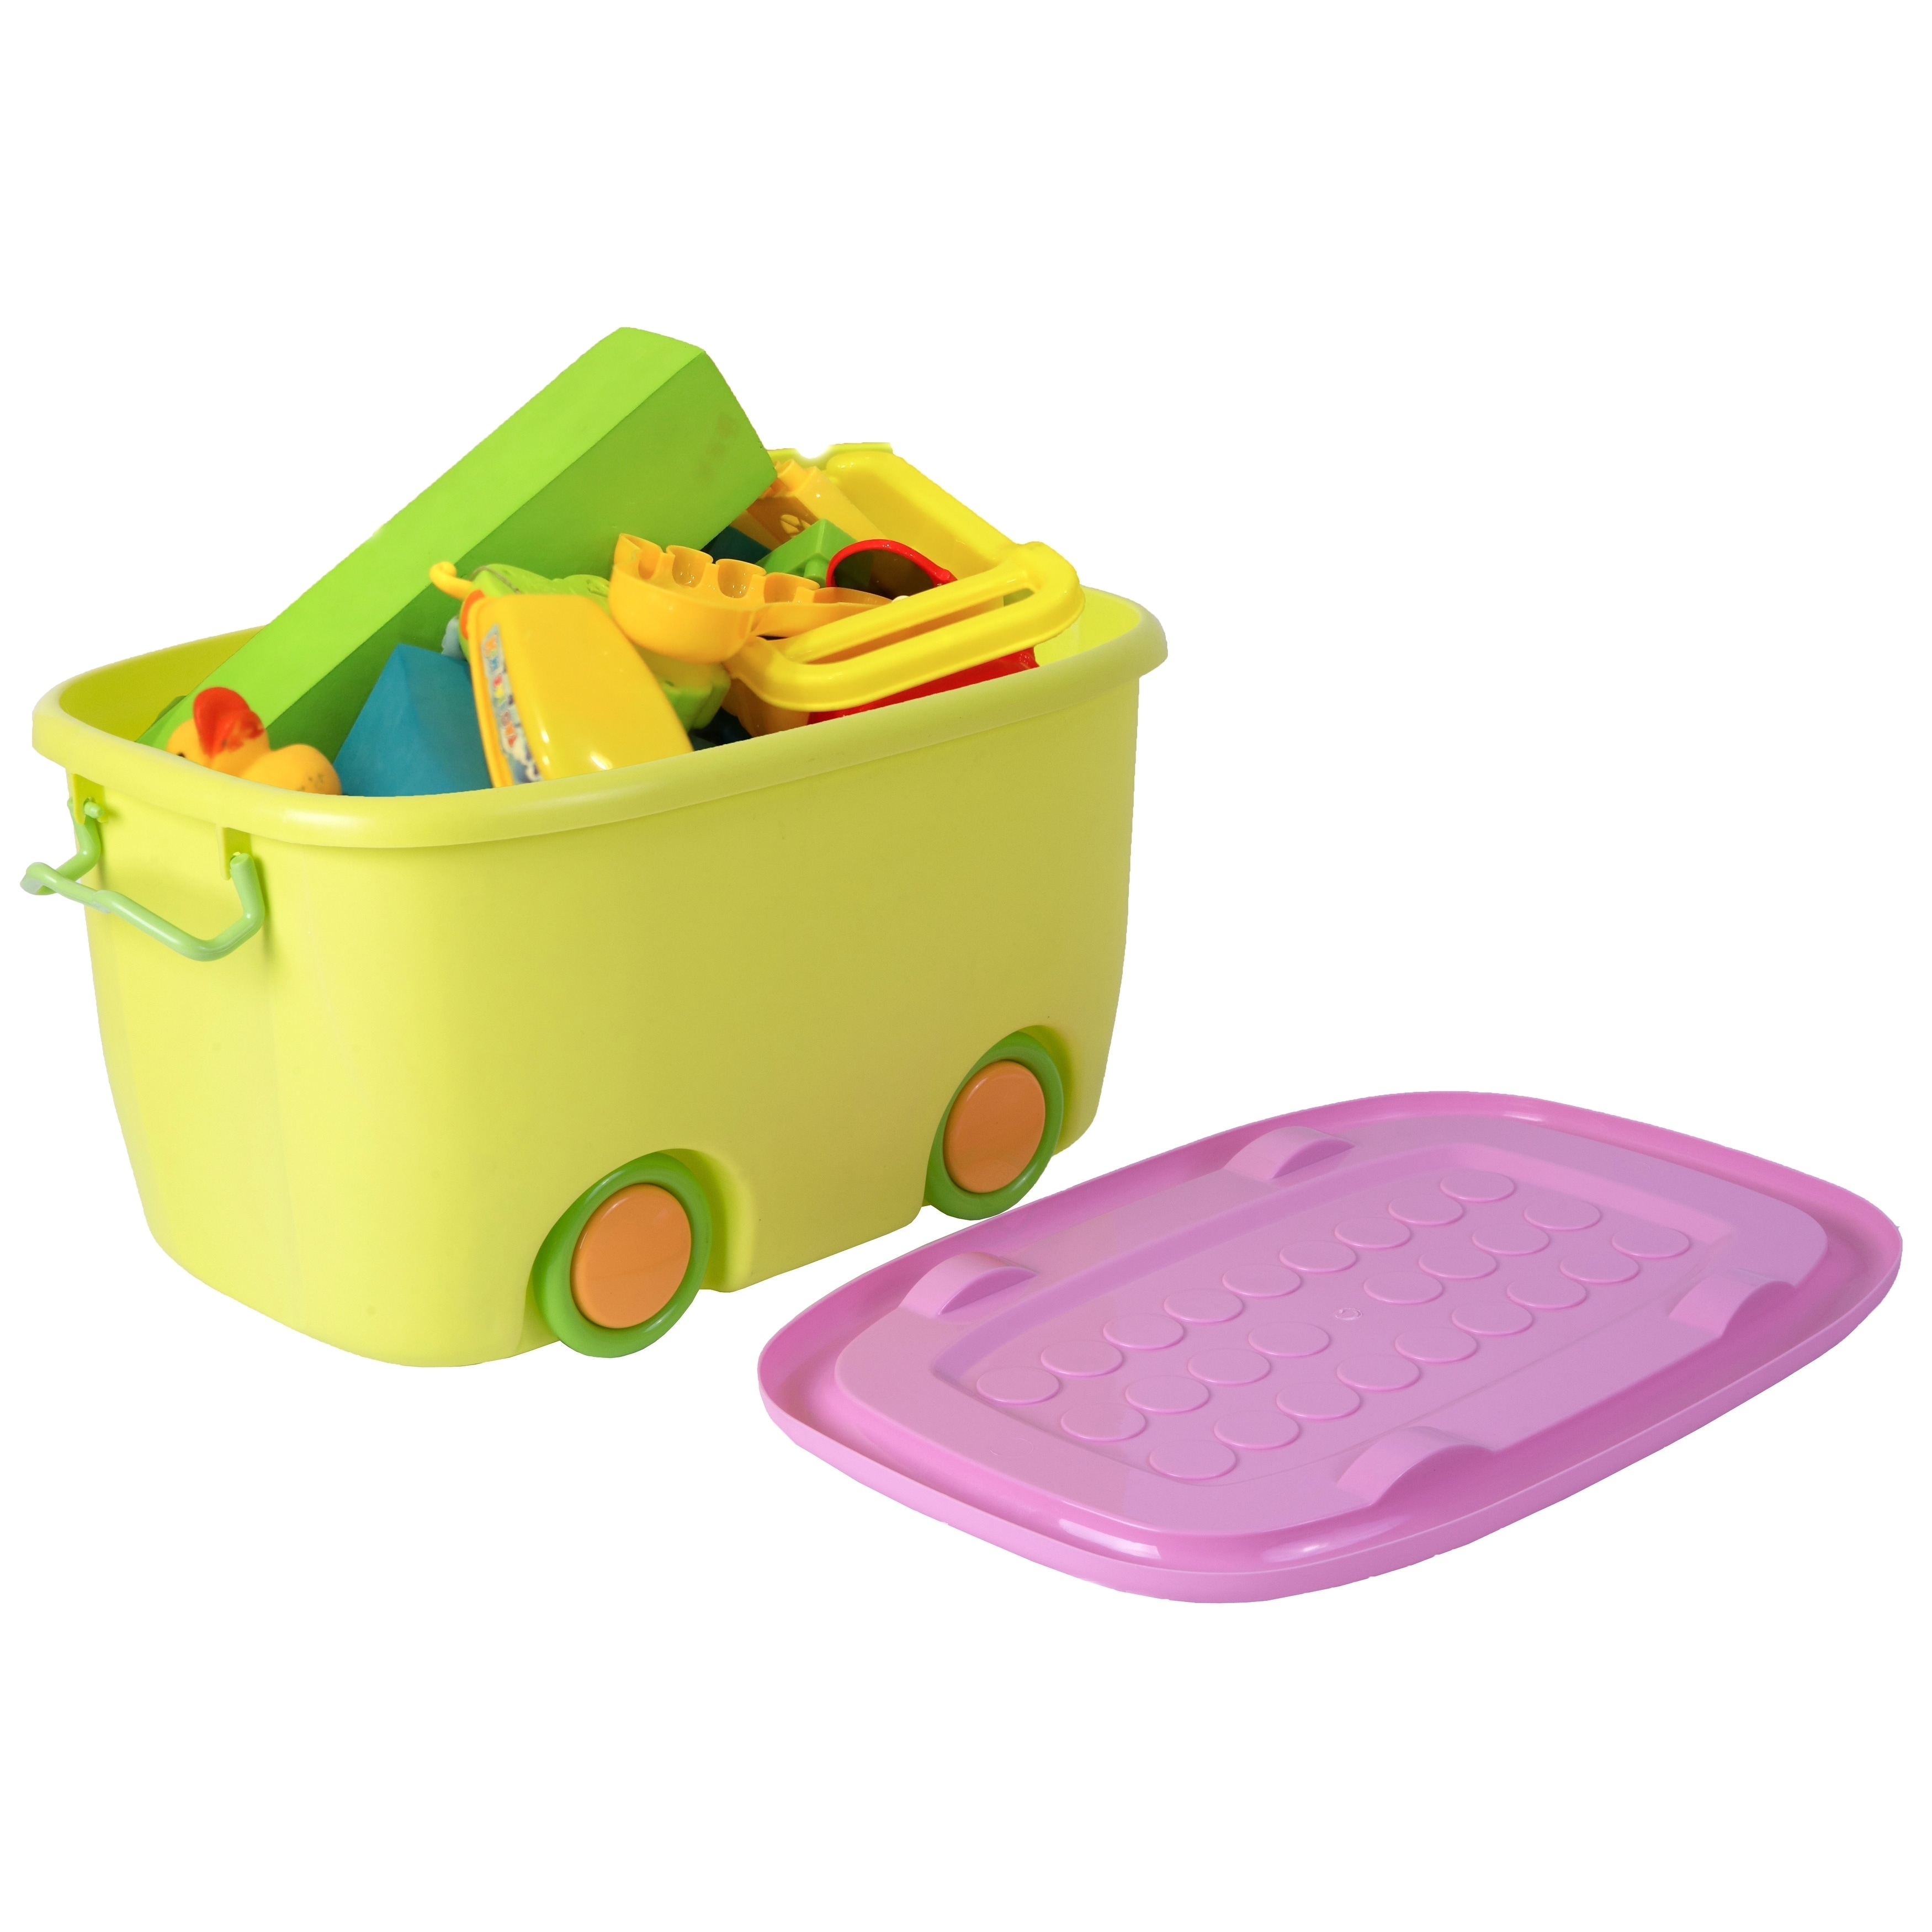 18 doll mini storage box tub bin container organizer NEW choose color